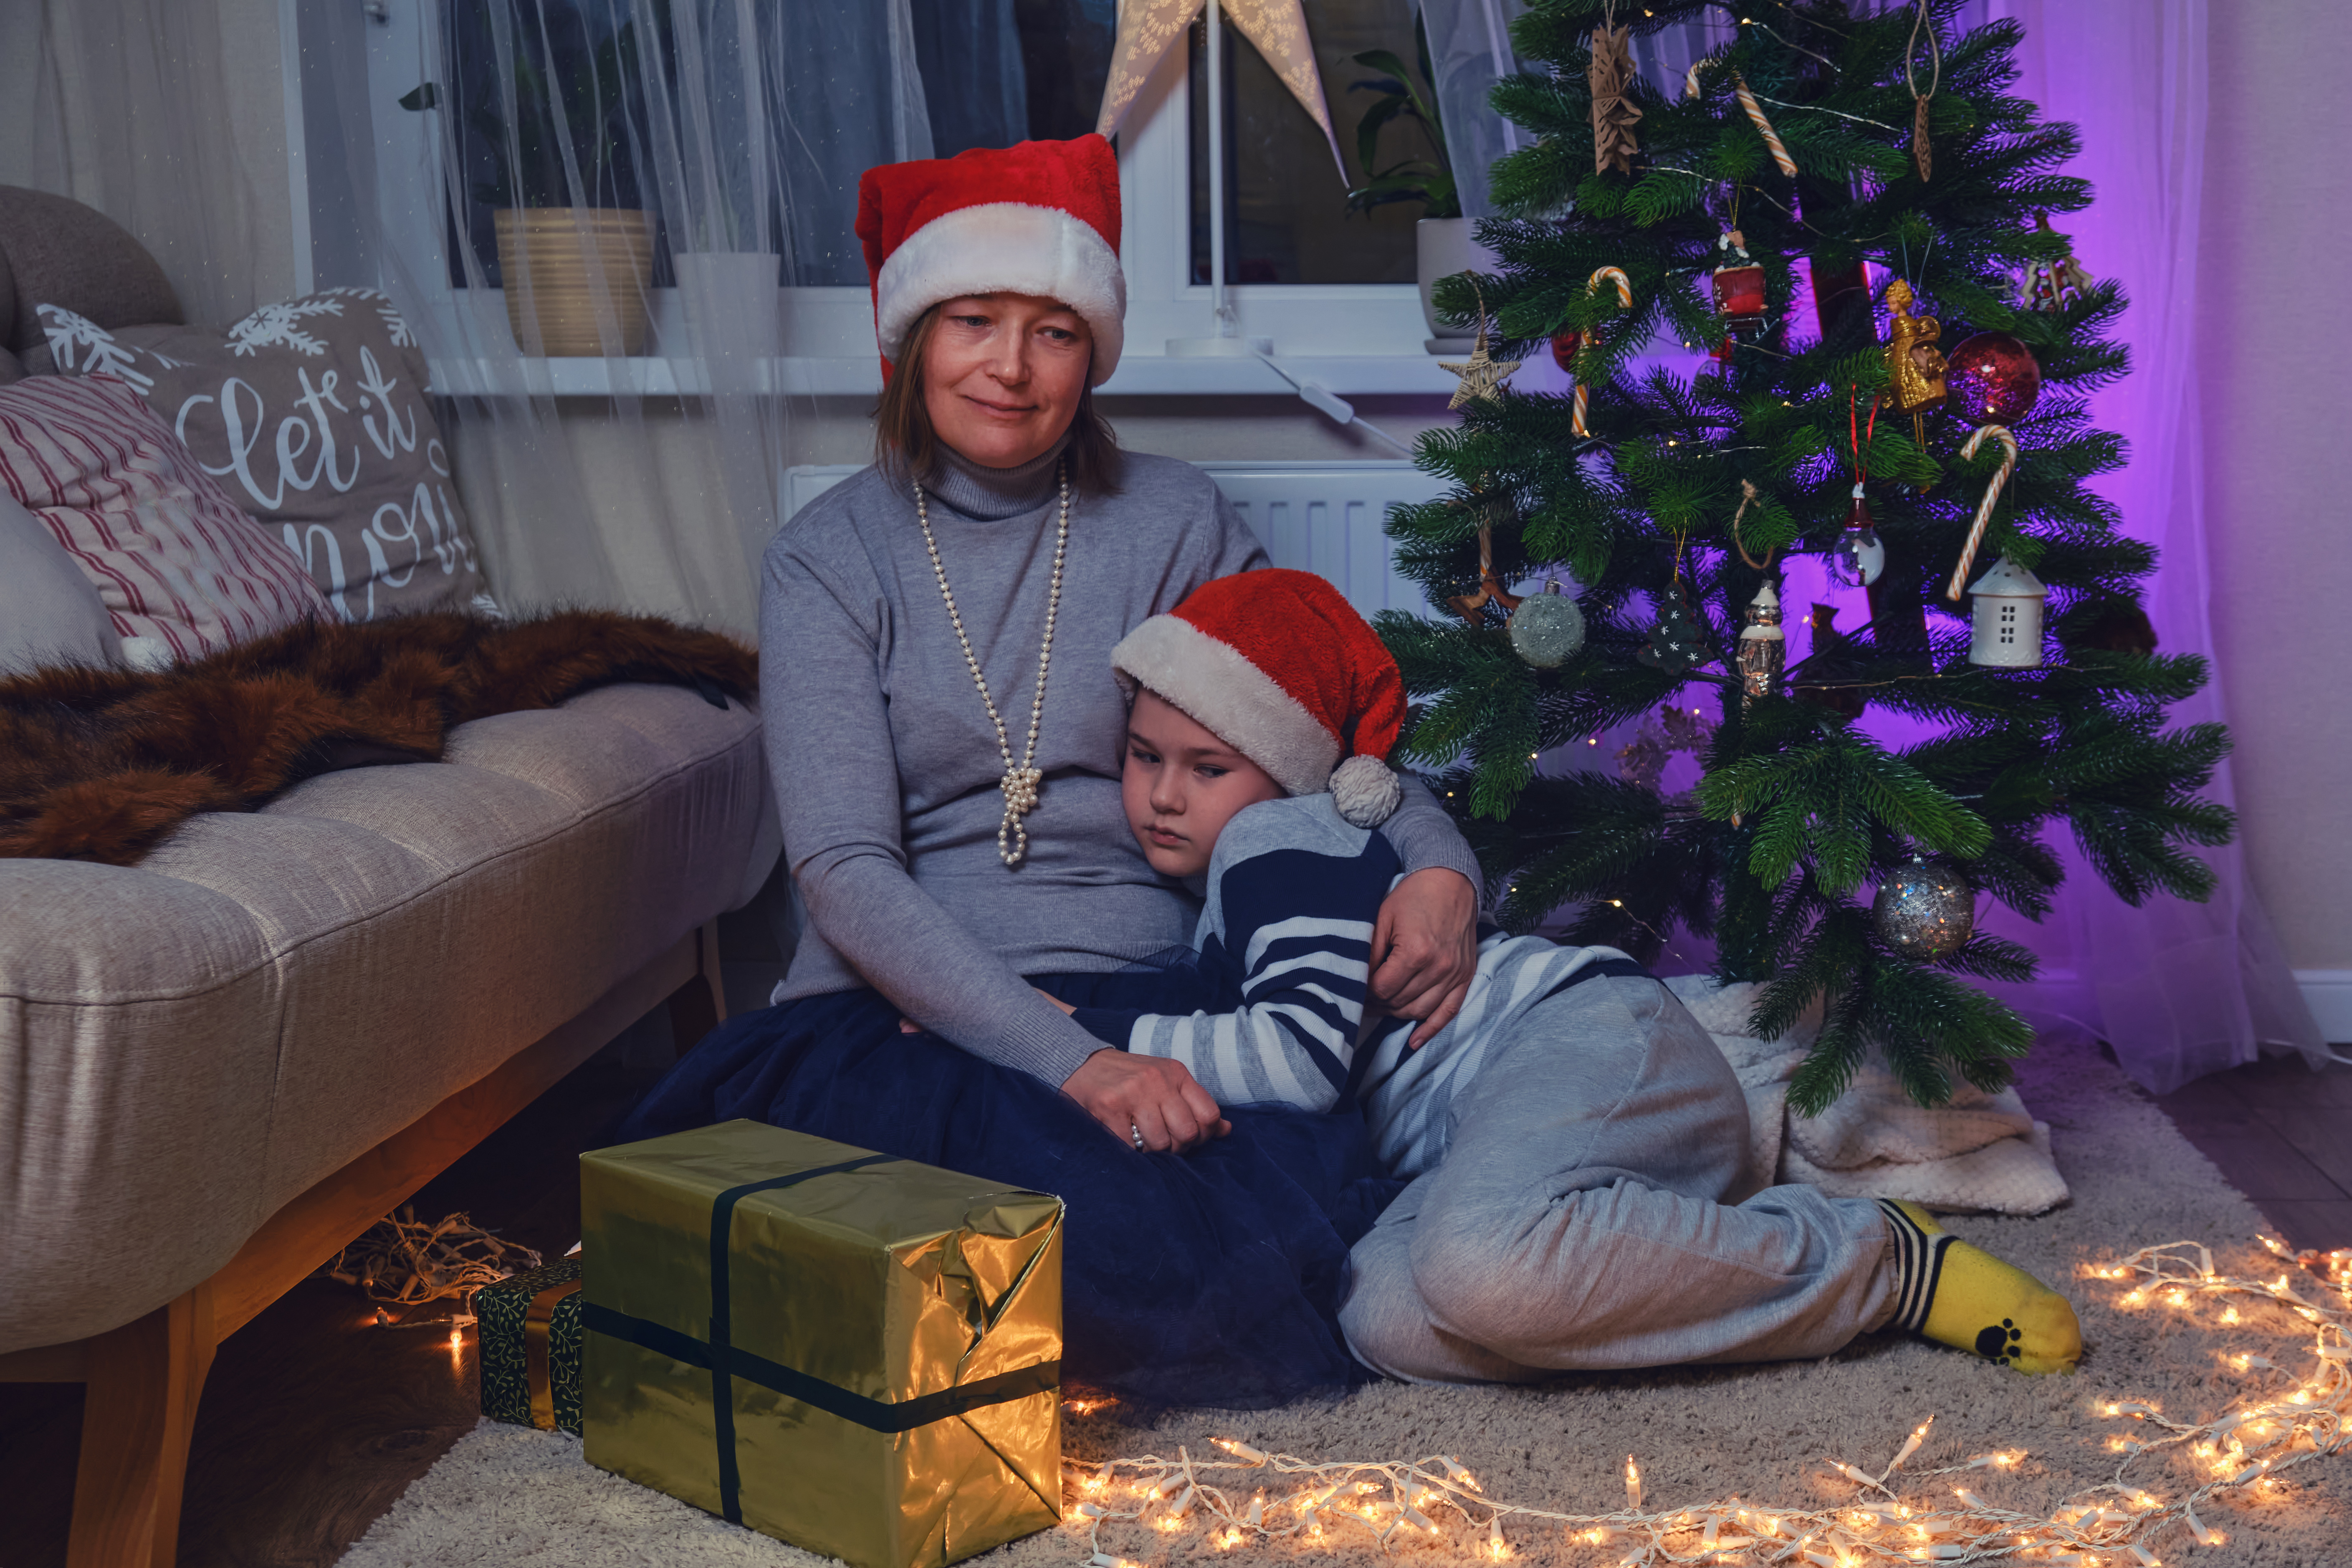 Madre e hijo sentados cerca del árbol de Navidad | Foto: Getty Images